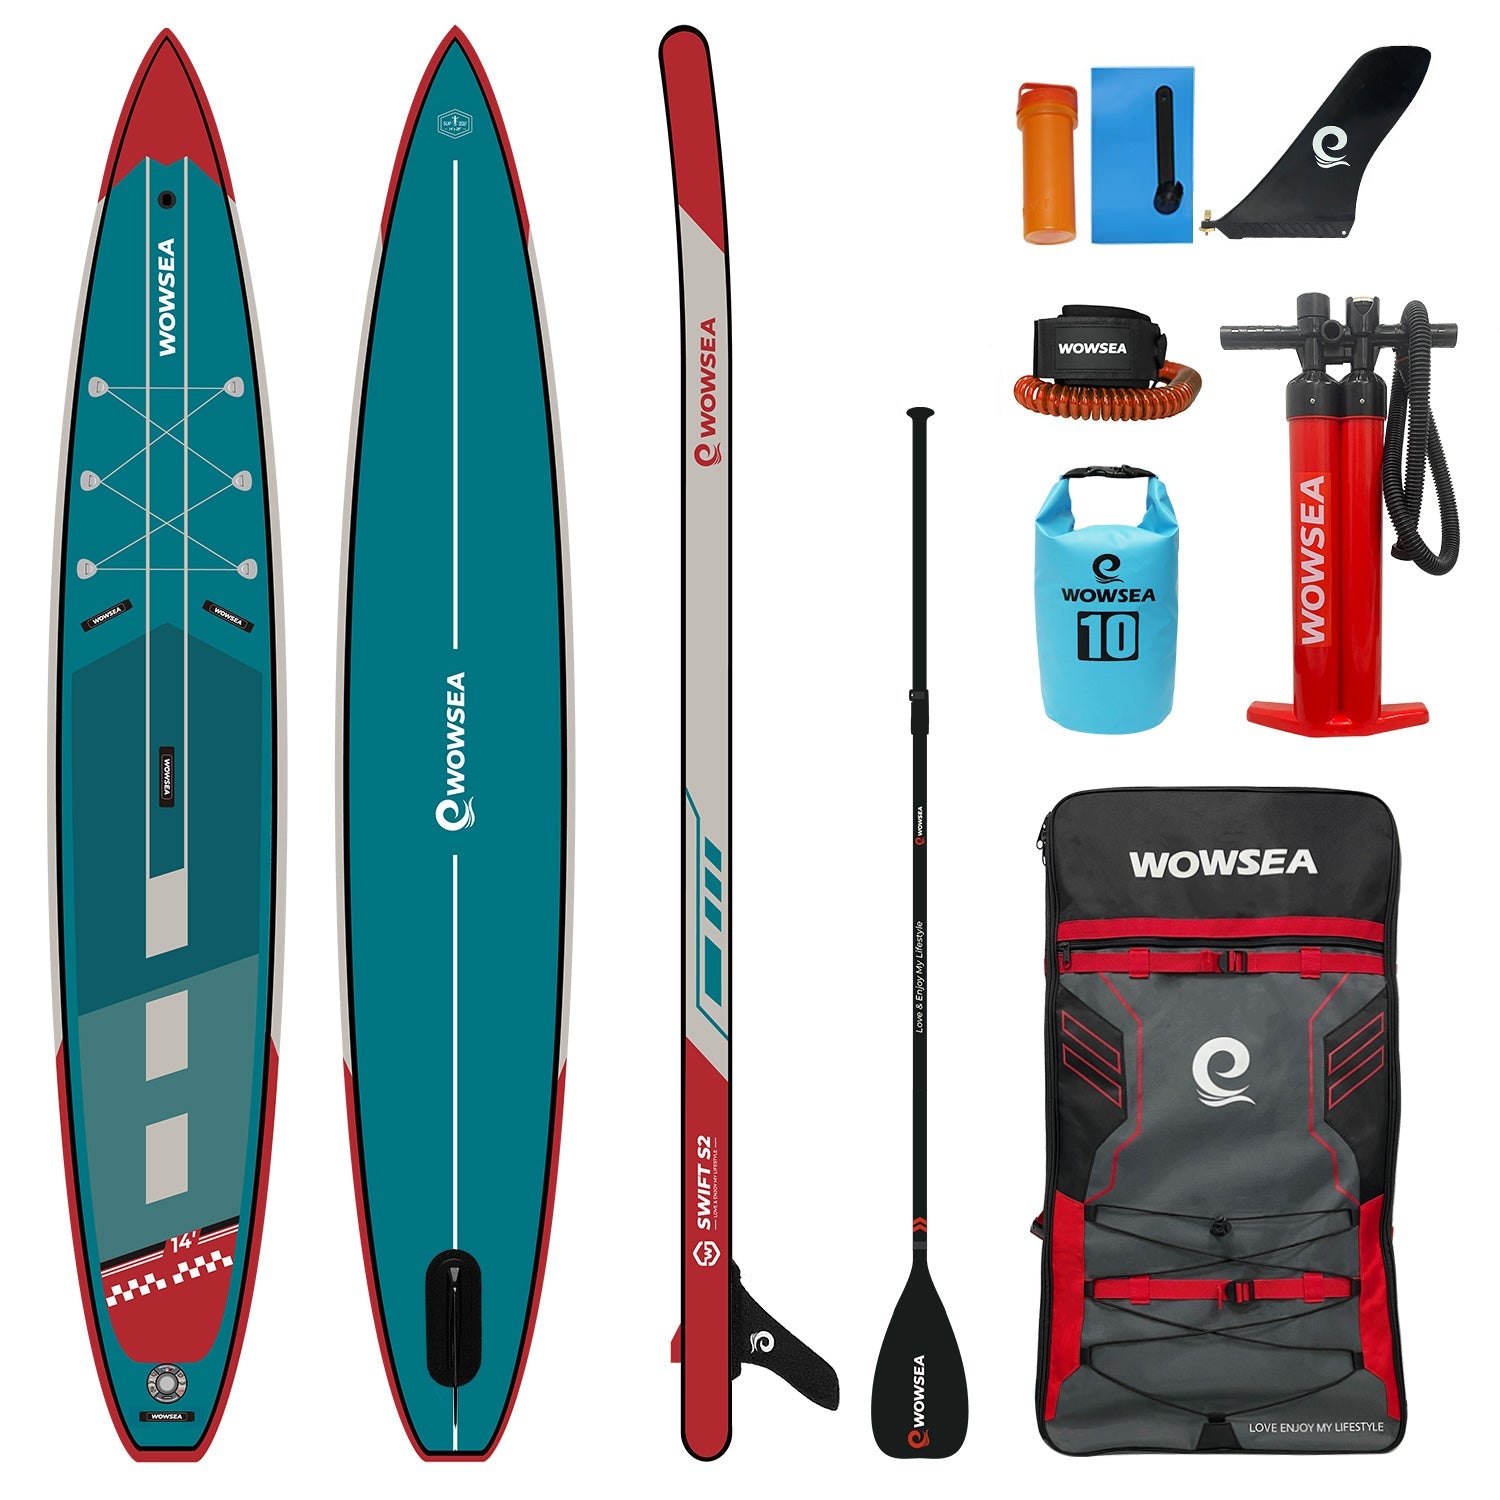 Tabla Paddle Surf Hinchable, Stand Up Paddle Board Tabla de Surf Premium  con Asiento de Kayak, Soporte para cámara, Remo Doble y Juego Completo de